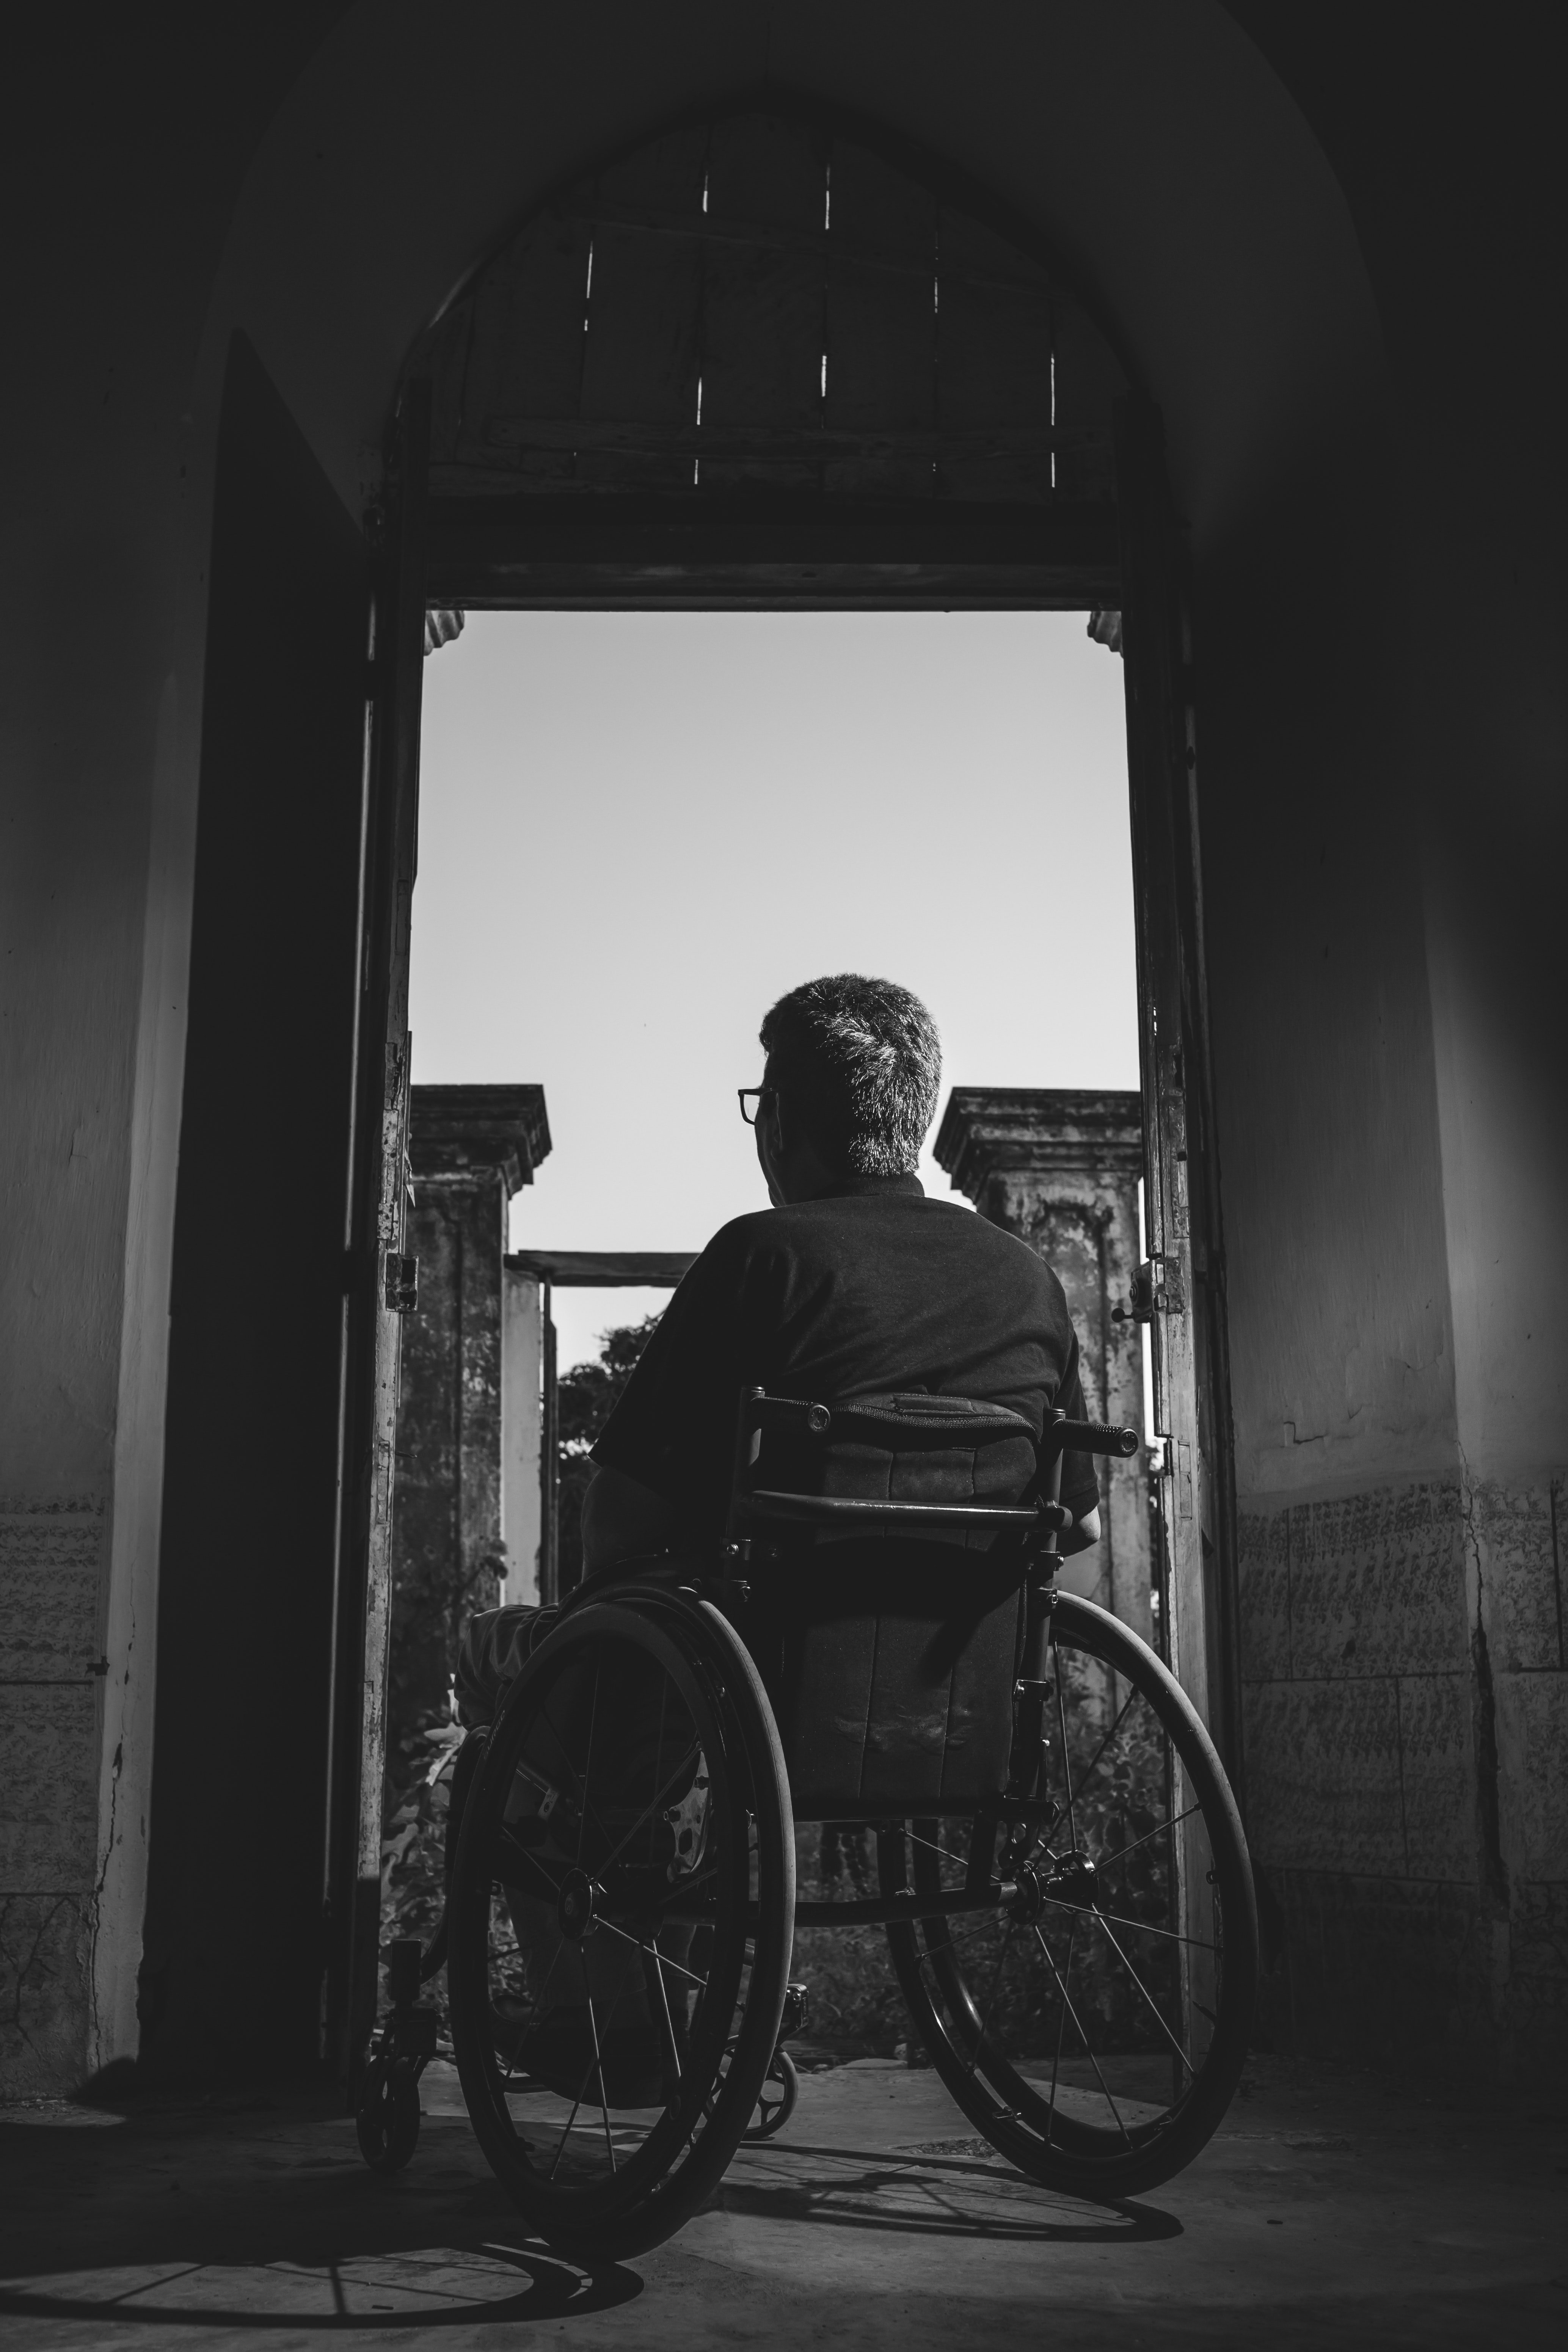 Daniel war nach einer Wirbelsäulenverletzung an einen Rollstuhl gefesselt | Quelle: Pexels